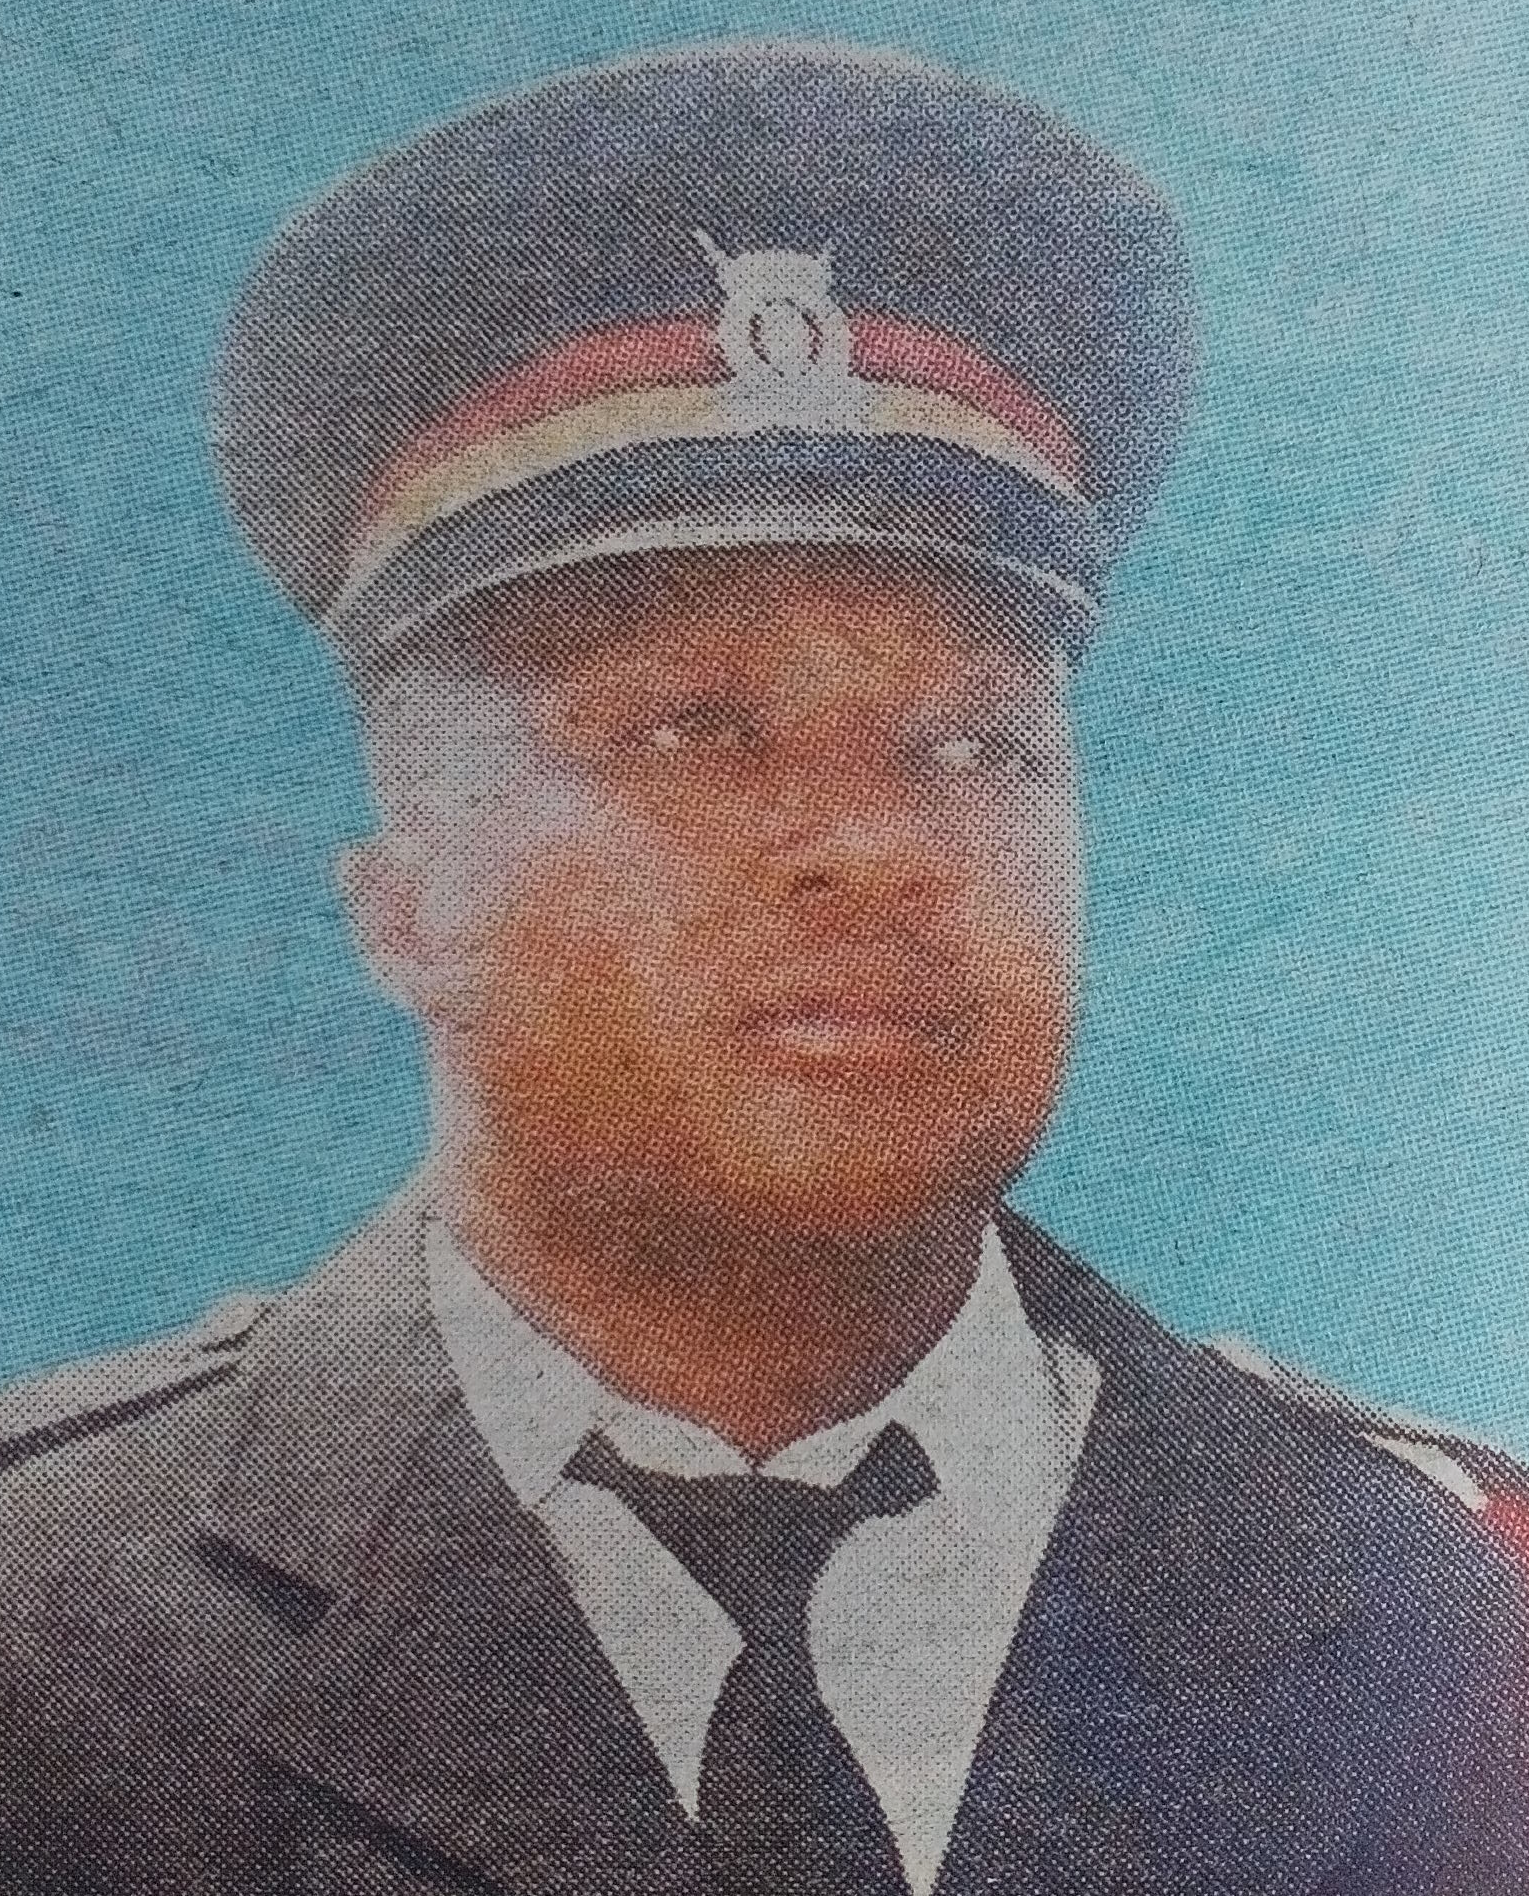 Obituary Image of Corporal Japhet Mwiti Gichunge